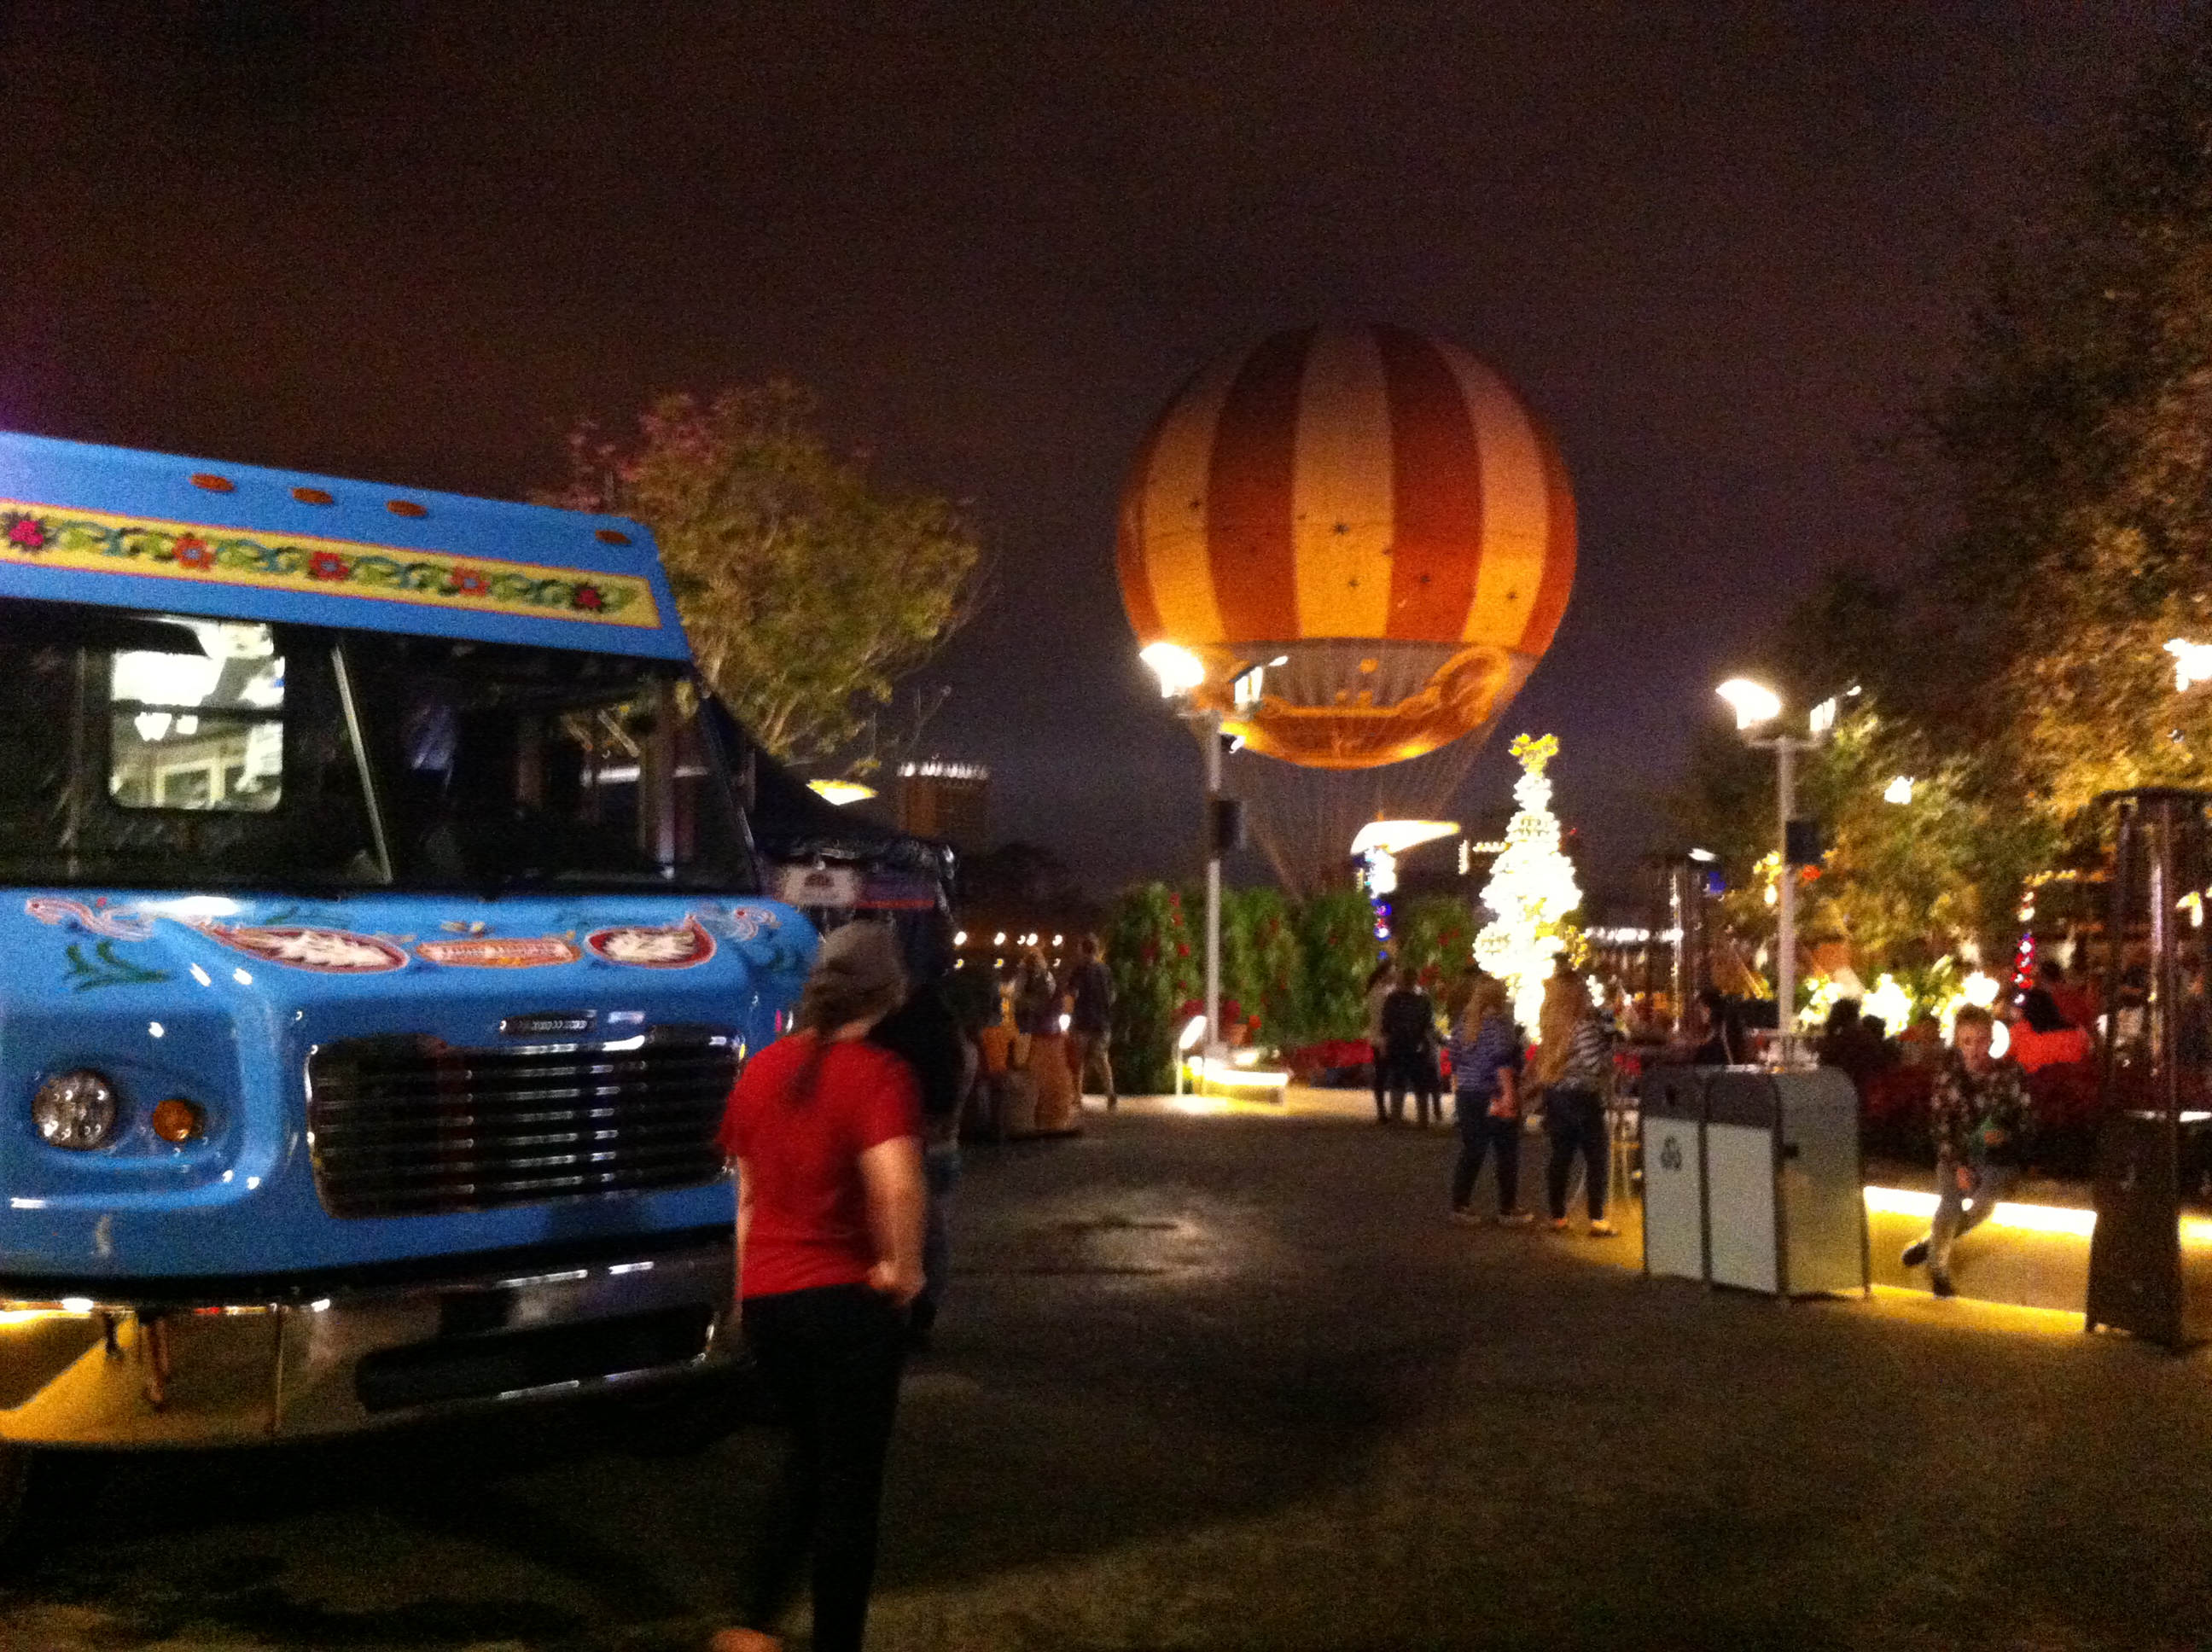 Downtown Disney Food Trucks